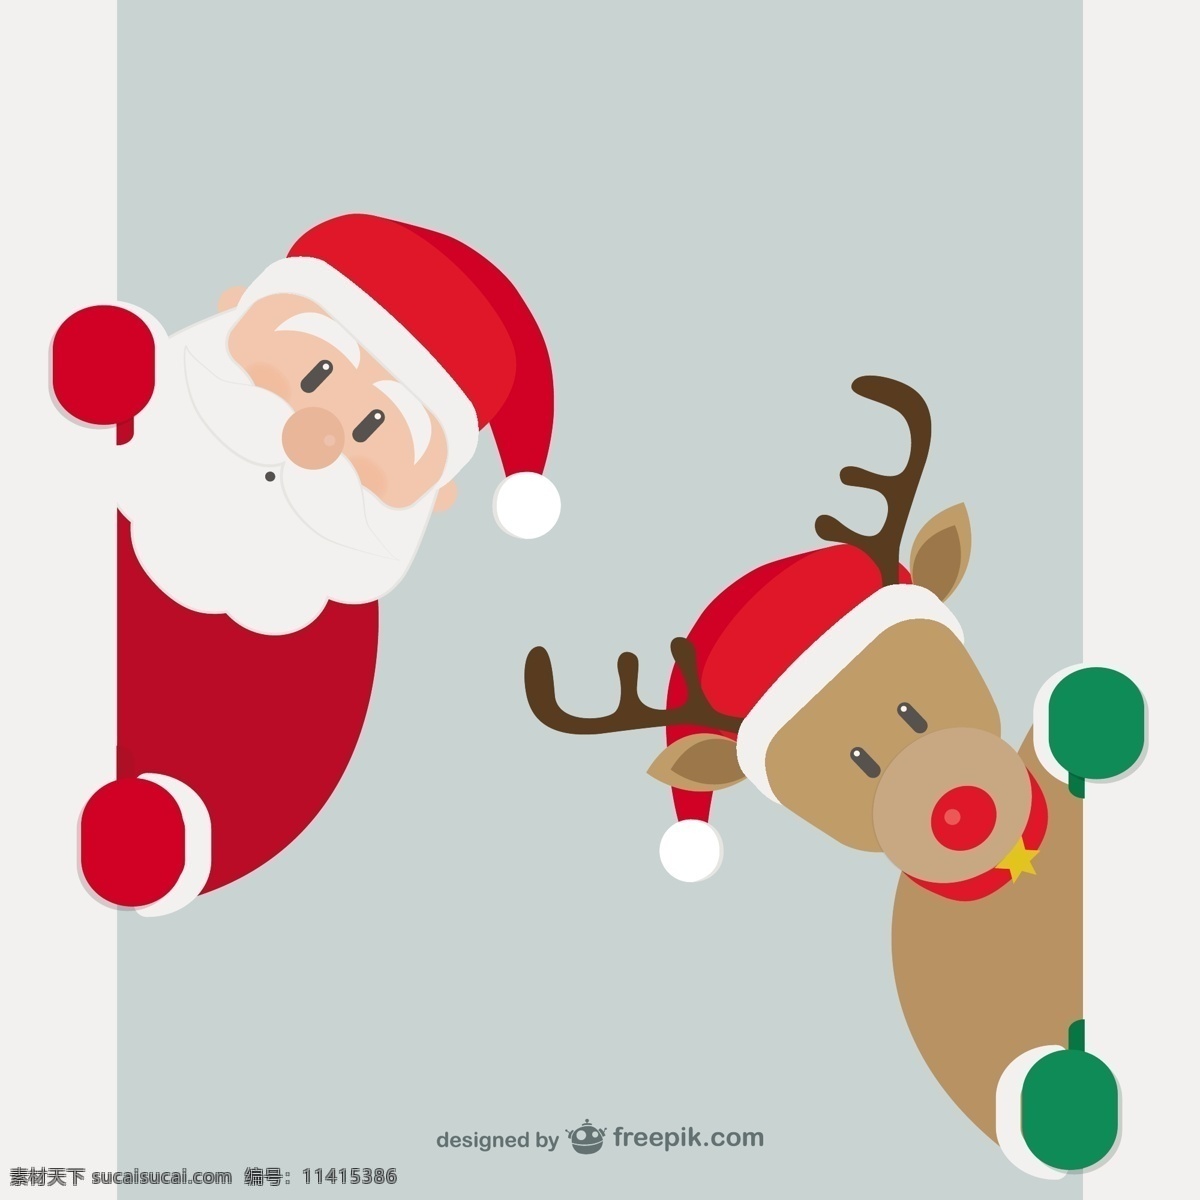 圣诞老人 克劳斯 驯鹿 圣诞饰品 圣诞克劳斯 圣诞装饰 圣诞装饰品 圣诞矢量 白色